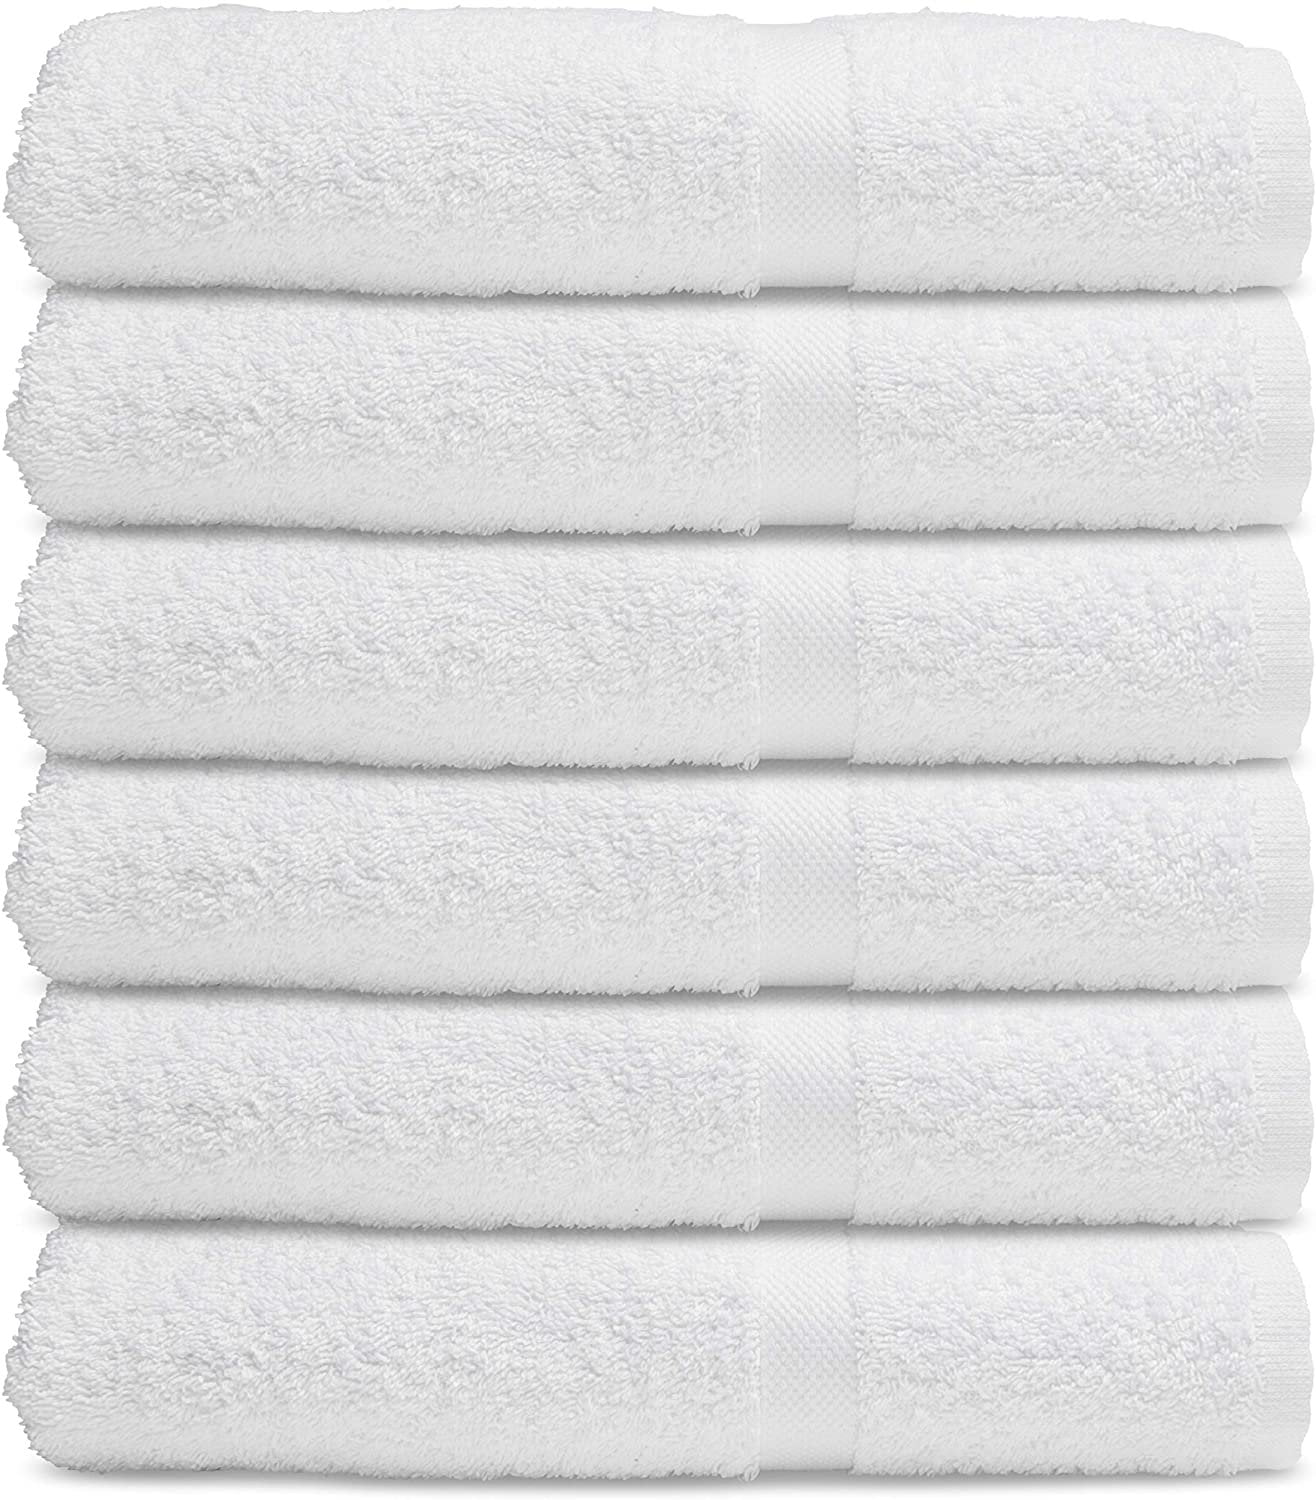 1 Dozen NEW Bath Towels 24 x 50 Cotton Blend White Soft Luxury Hotel Resort Home 